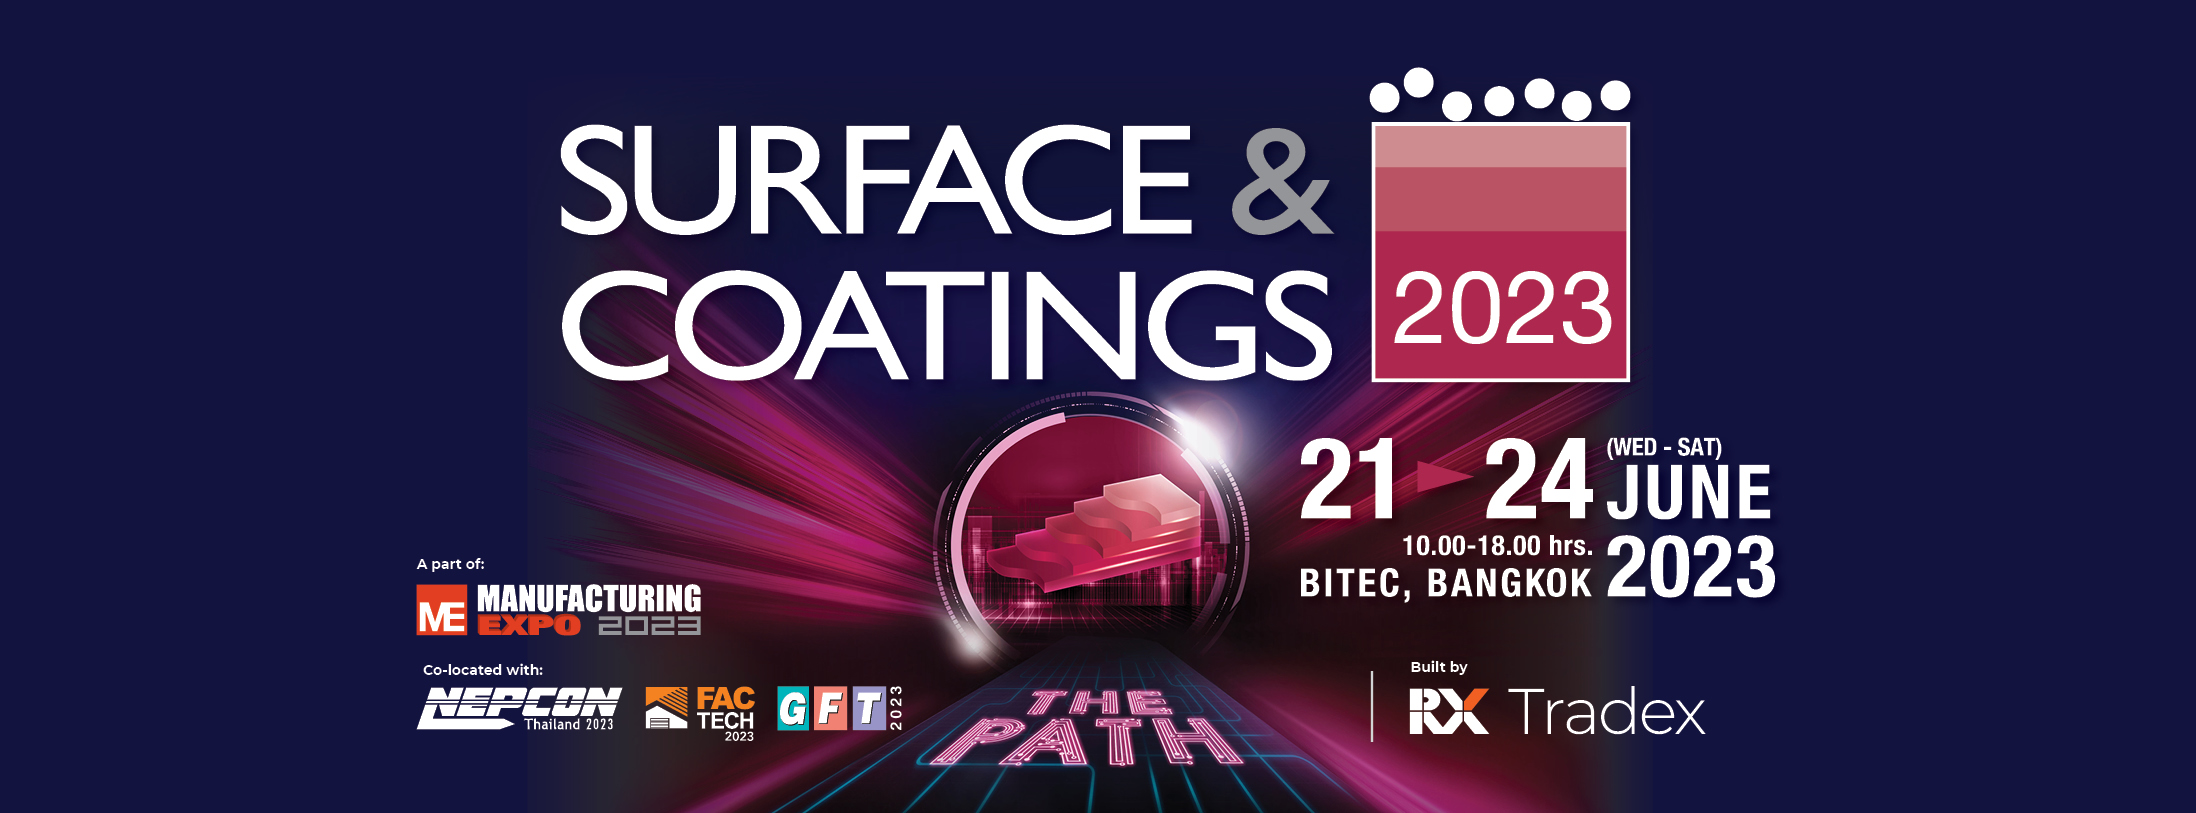 Surface & Coatings 2023, Bangkok Thailand, Bangkok, Thailand